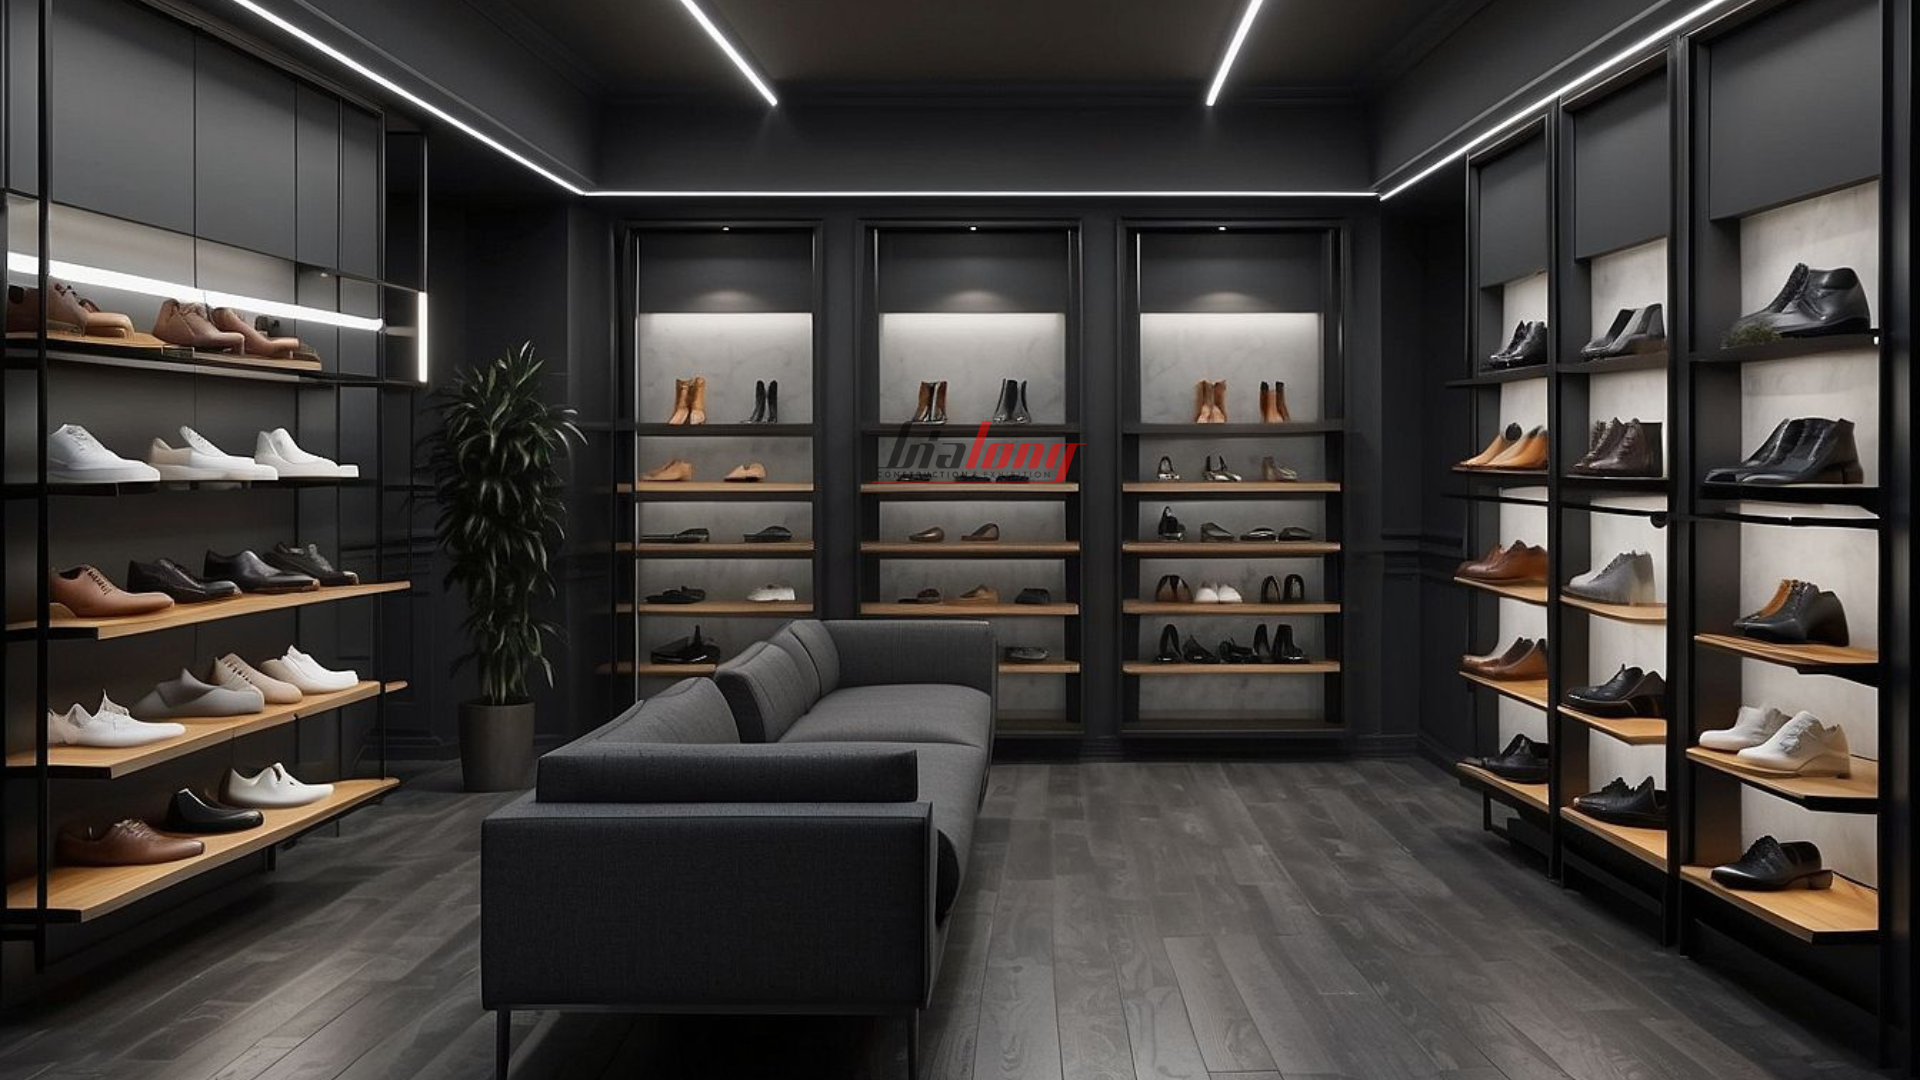 Thiết kế shop giày nam ấn tượng - Thịnh hành